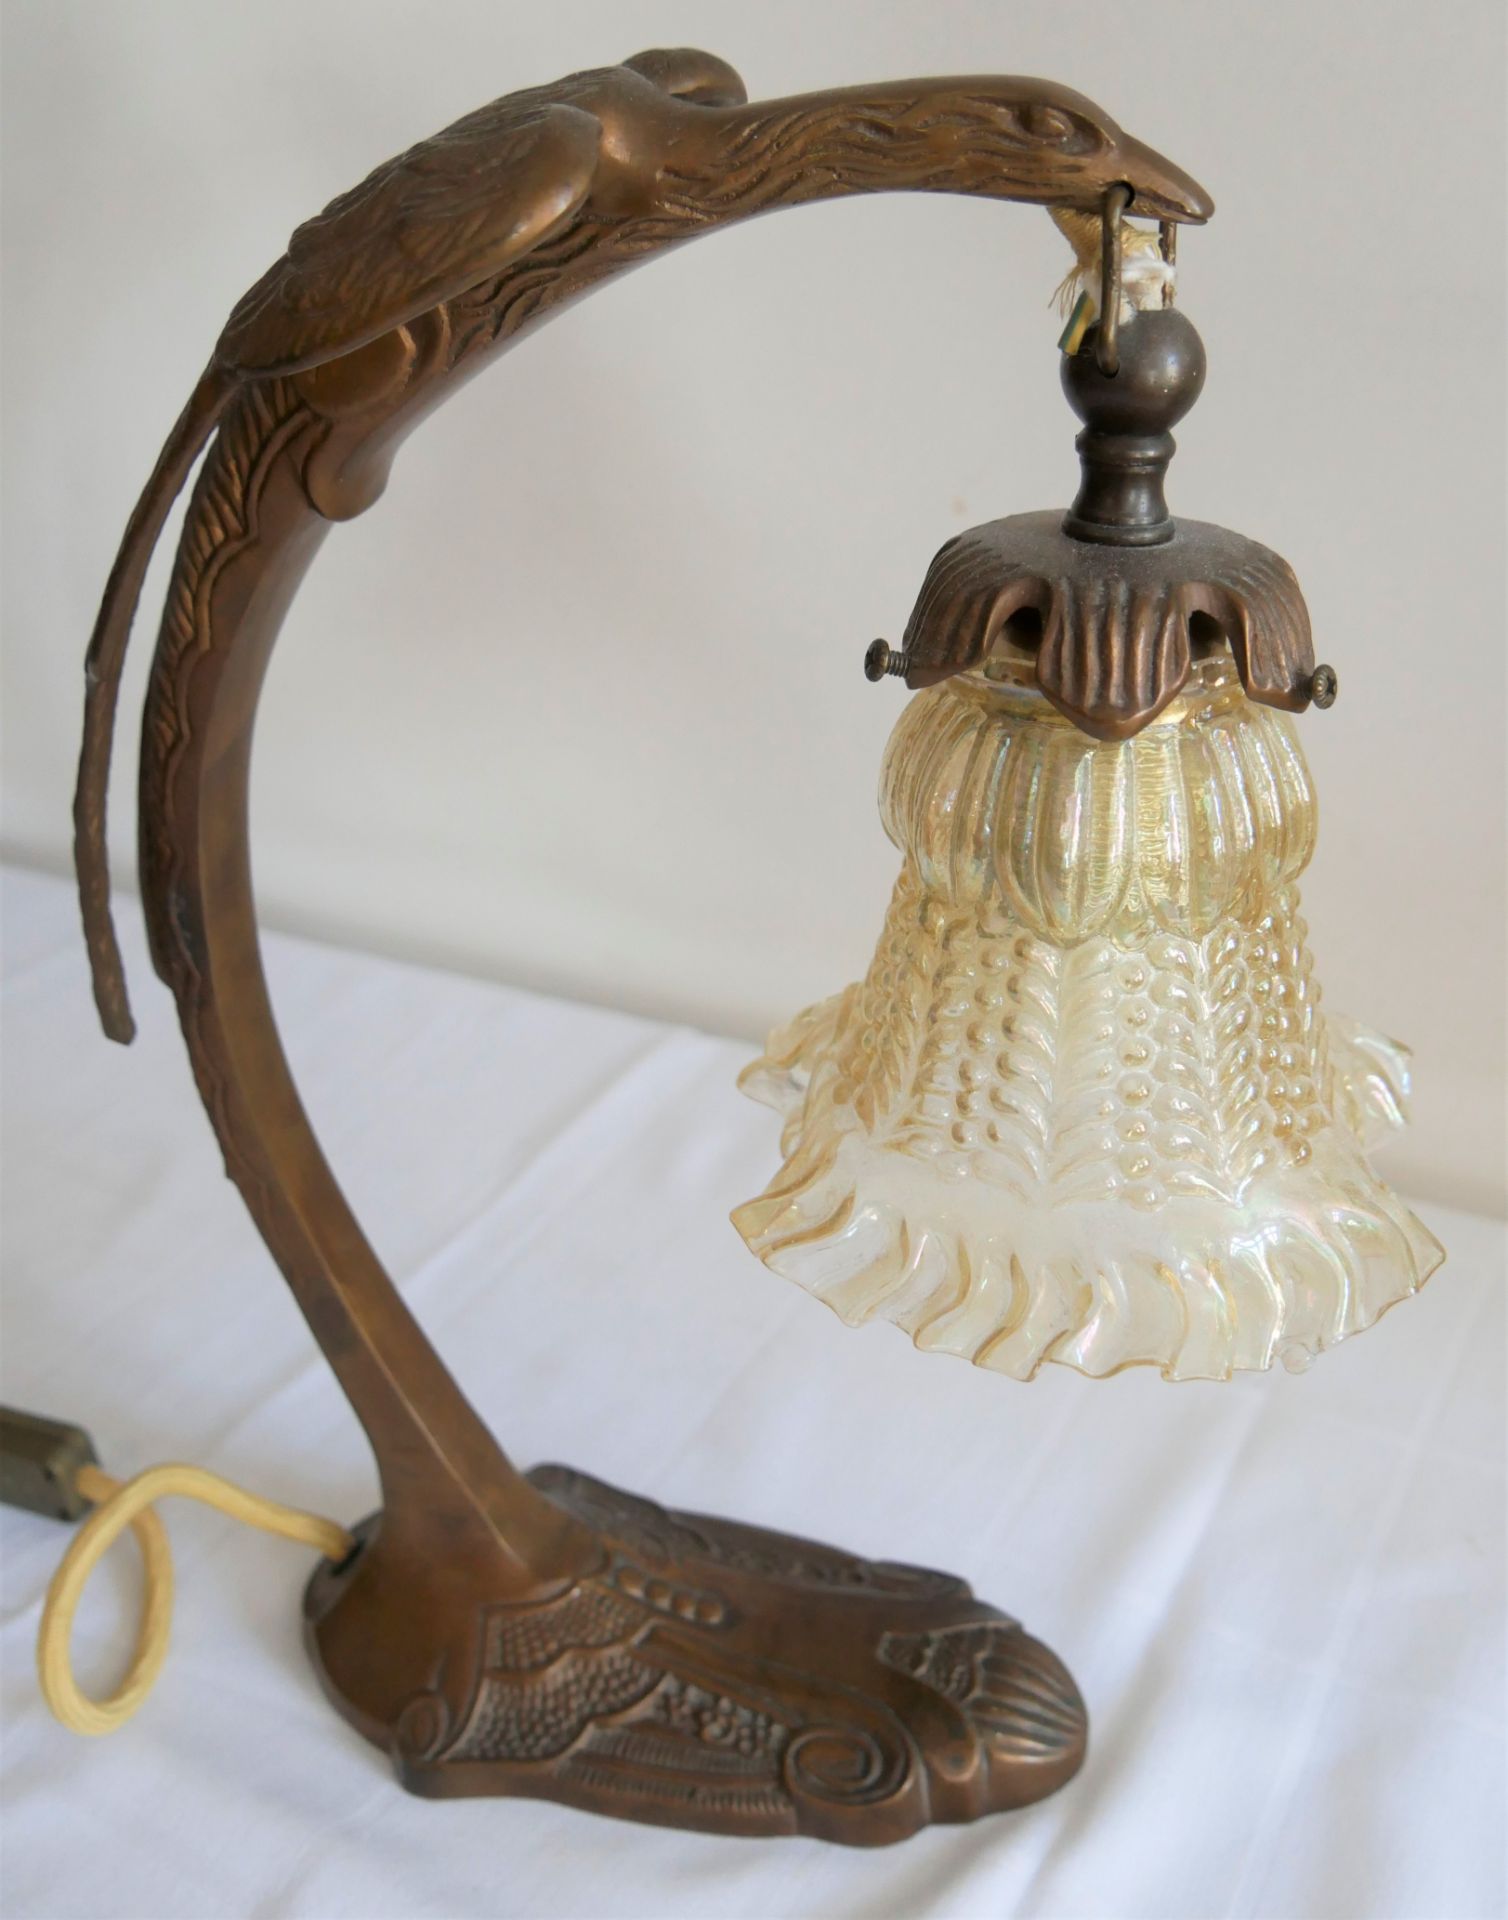 Art Deco Tischlampe in Form eines stilisierten Vogels mit einem Glaslampenschirm. Höhe ca. 34 cm - Bild 3 aus 3